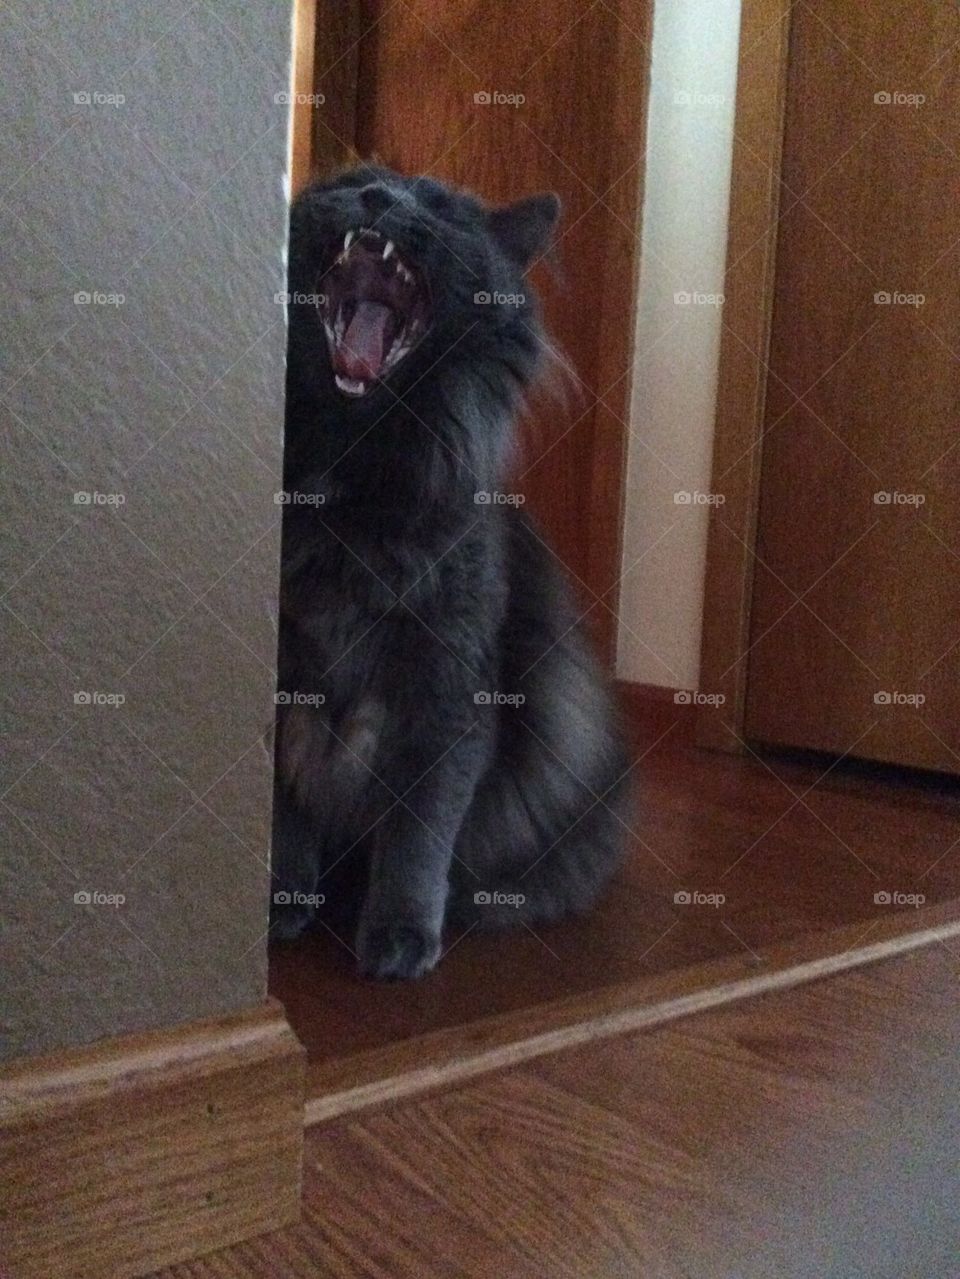 Cat screams